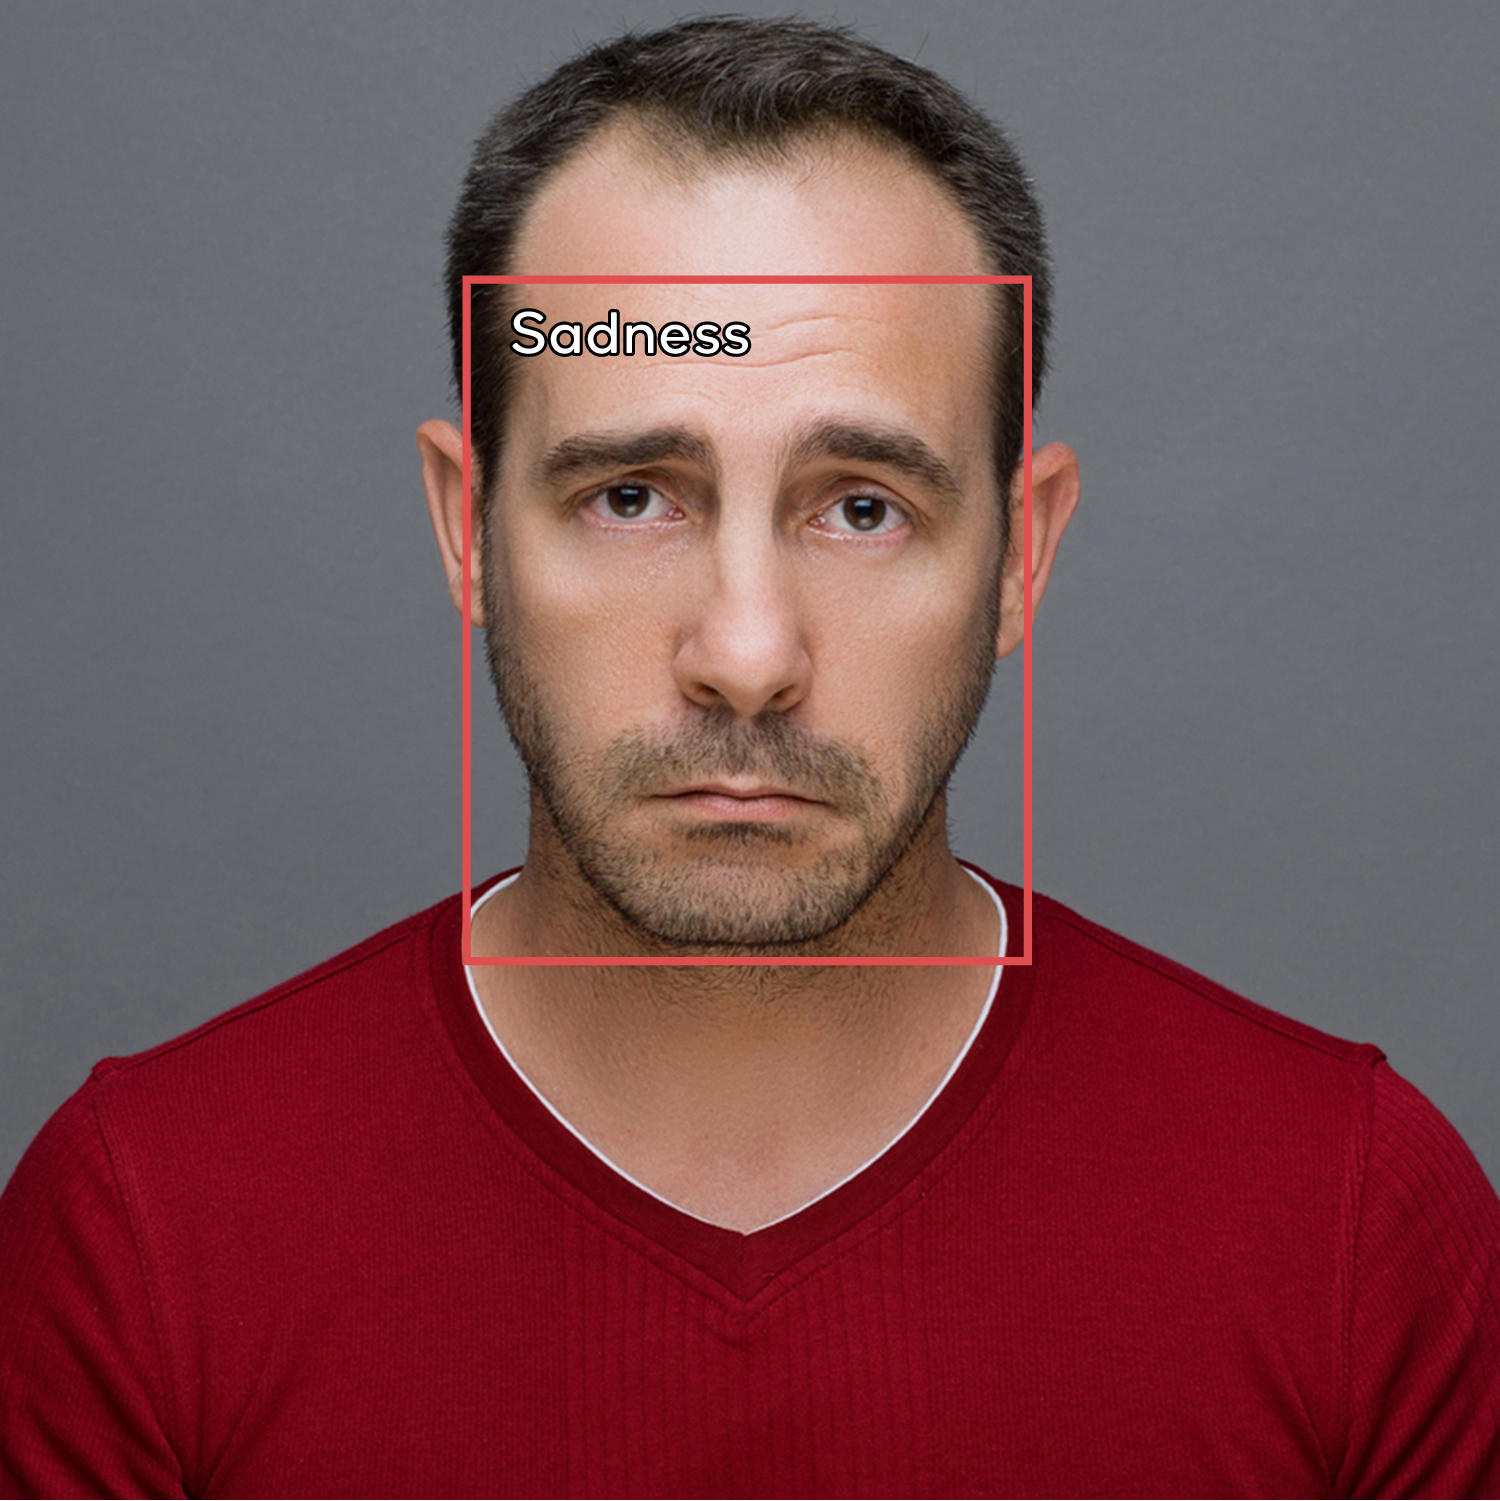 Facial Expression Detection - Sadness